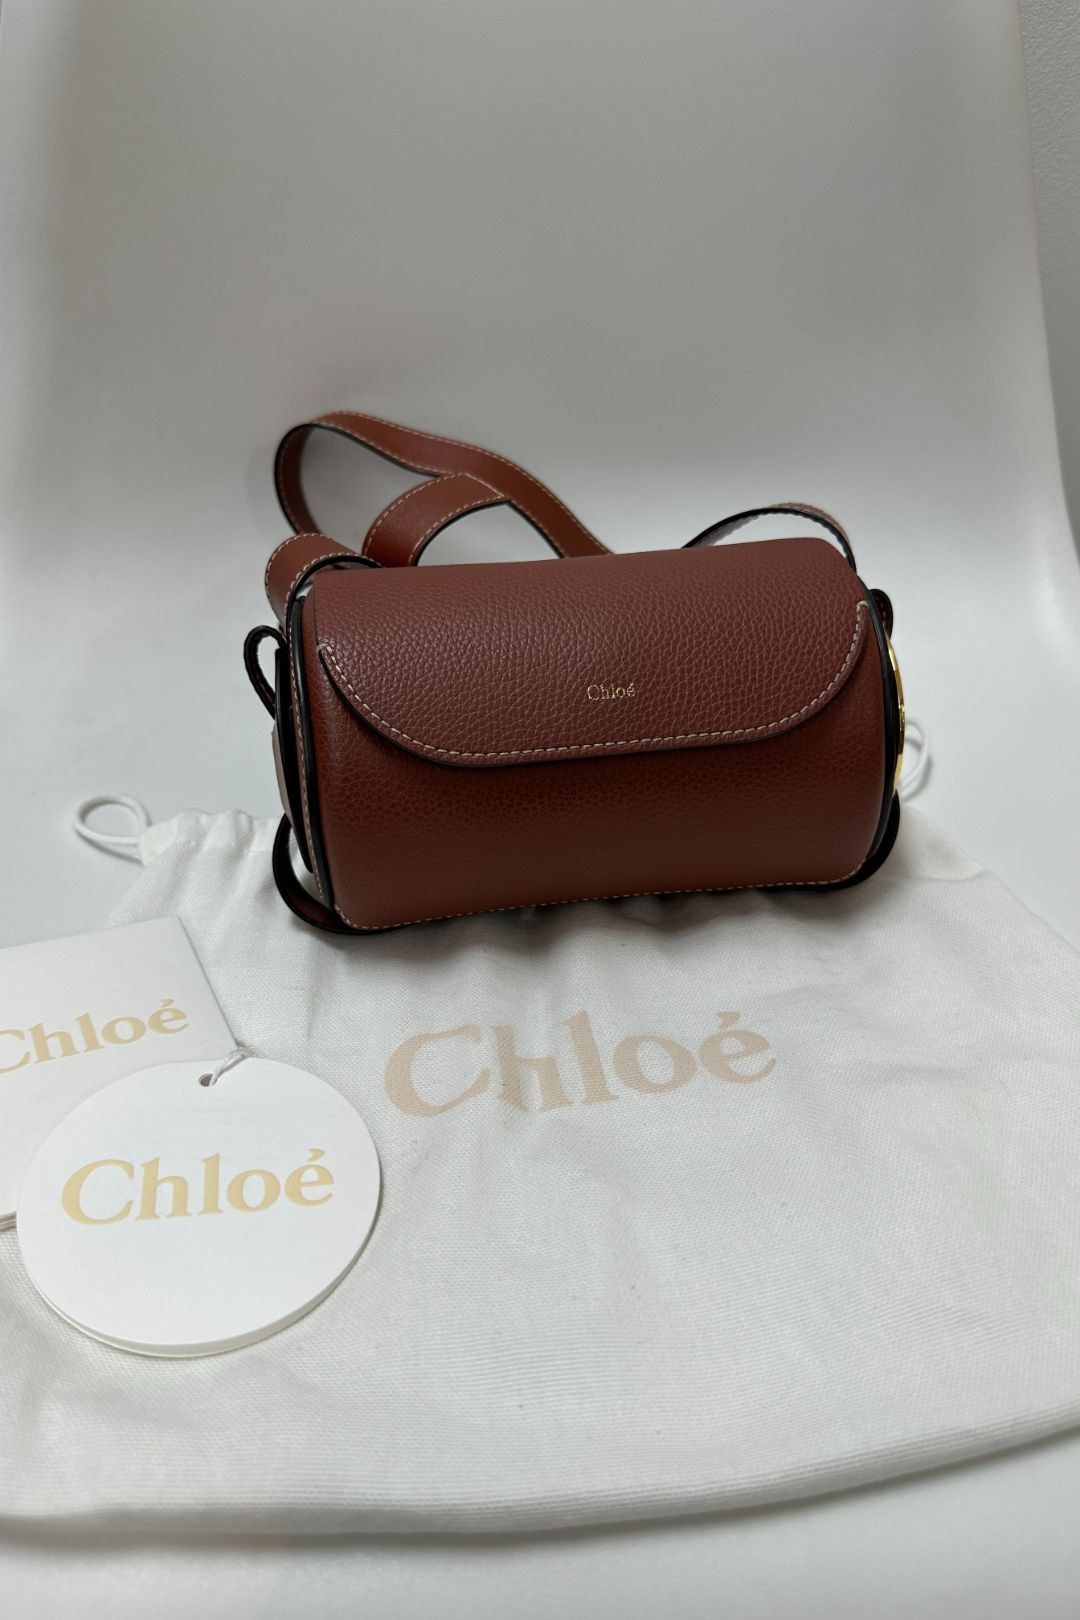 Chloé Darryl Mini Bag in Sepia Brown